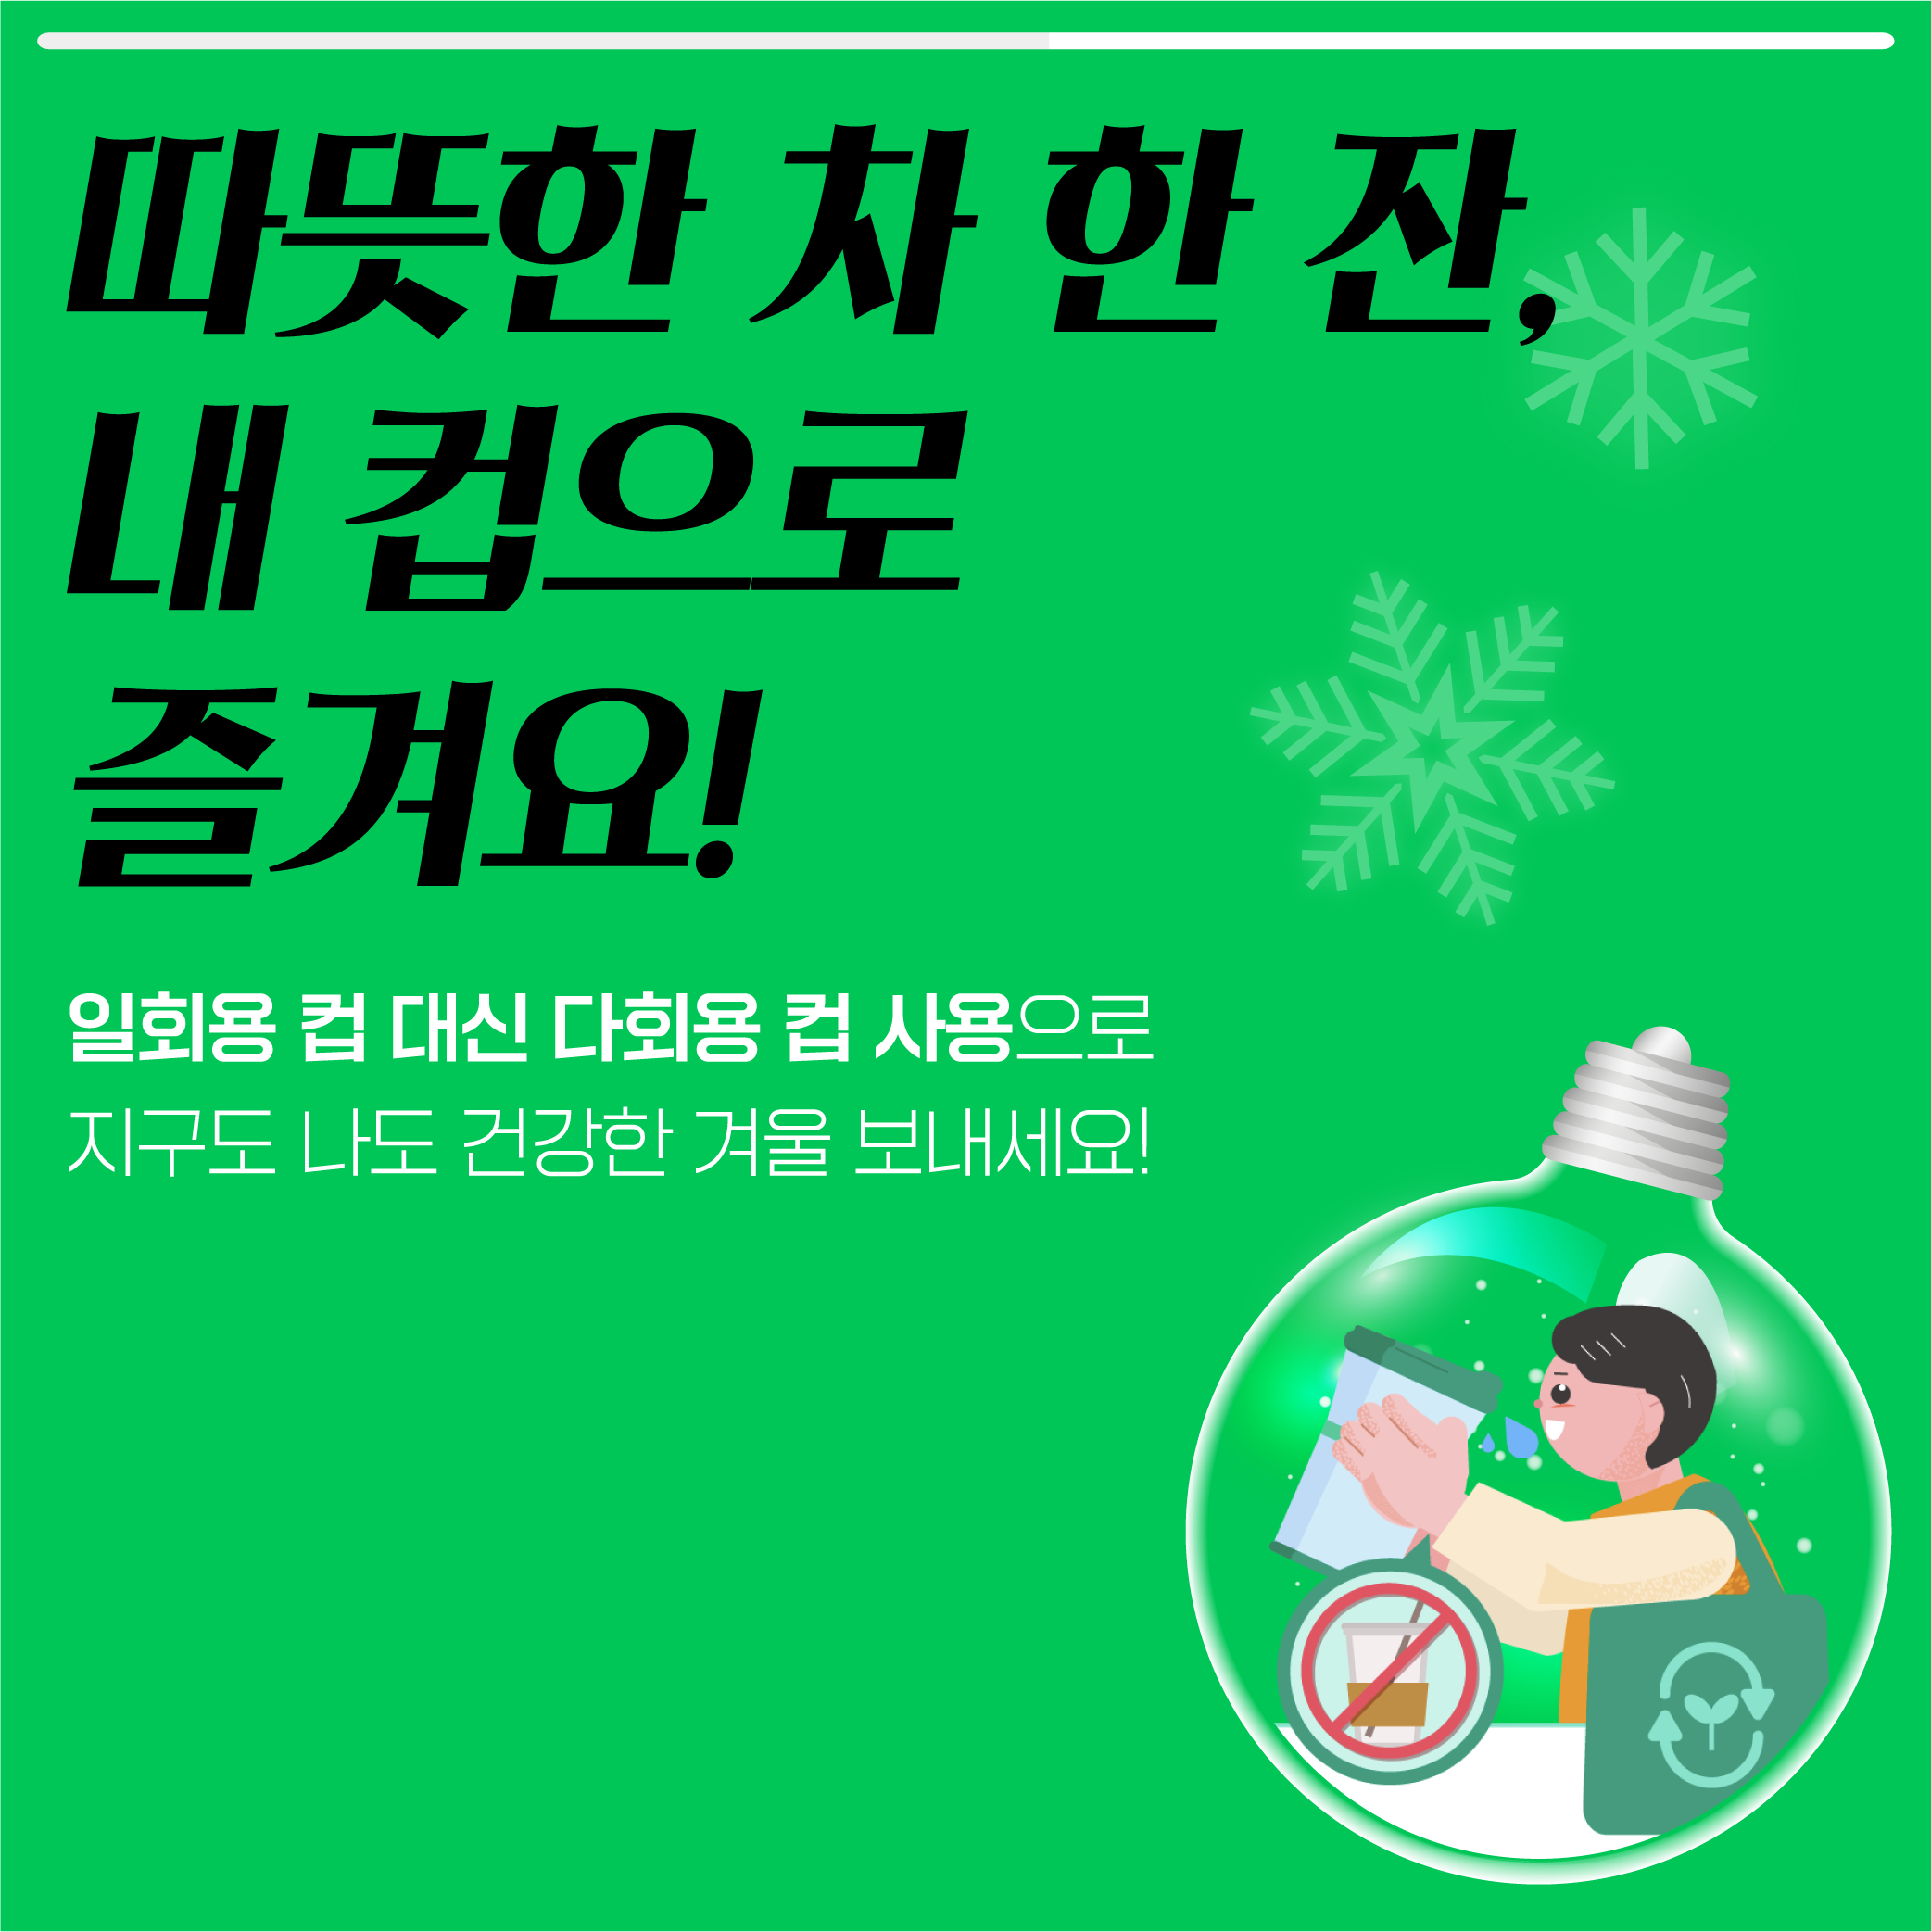 동절기 탄소중립 실천 카드뉴스_3.png